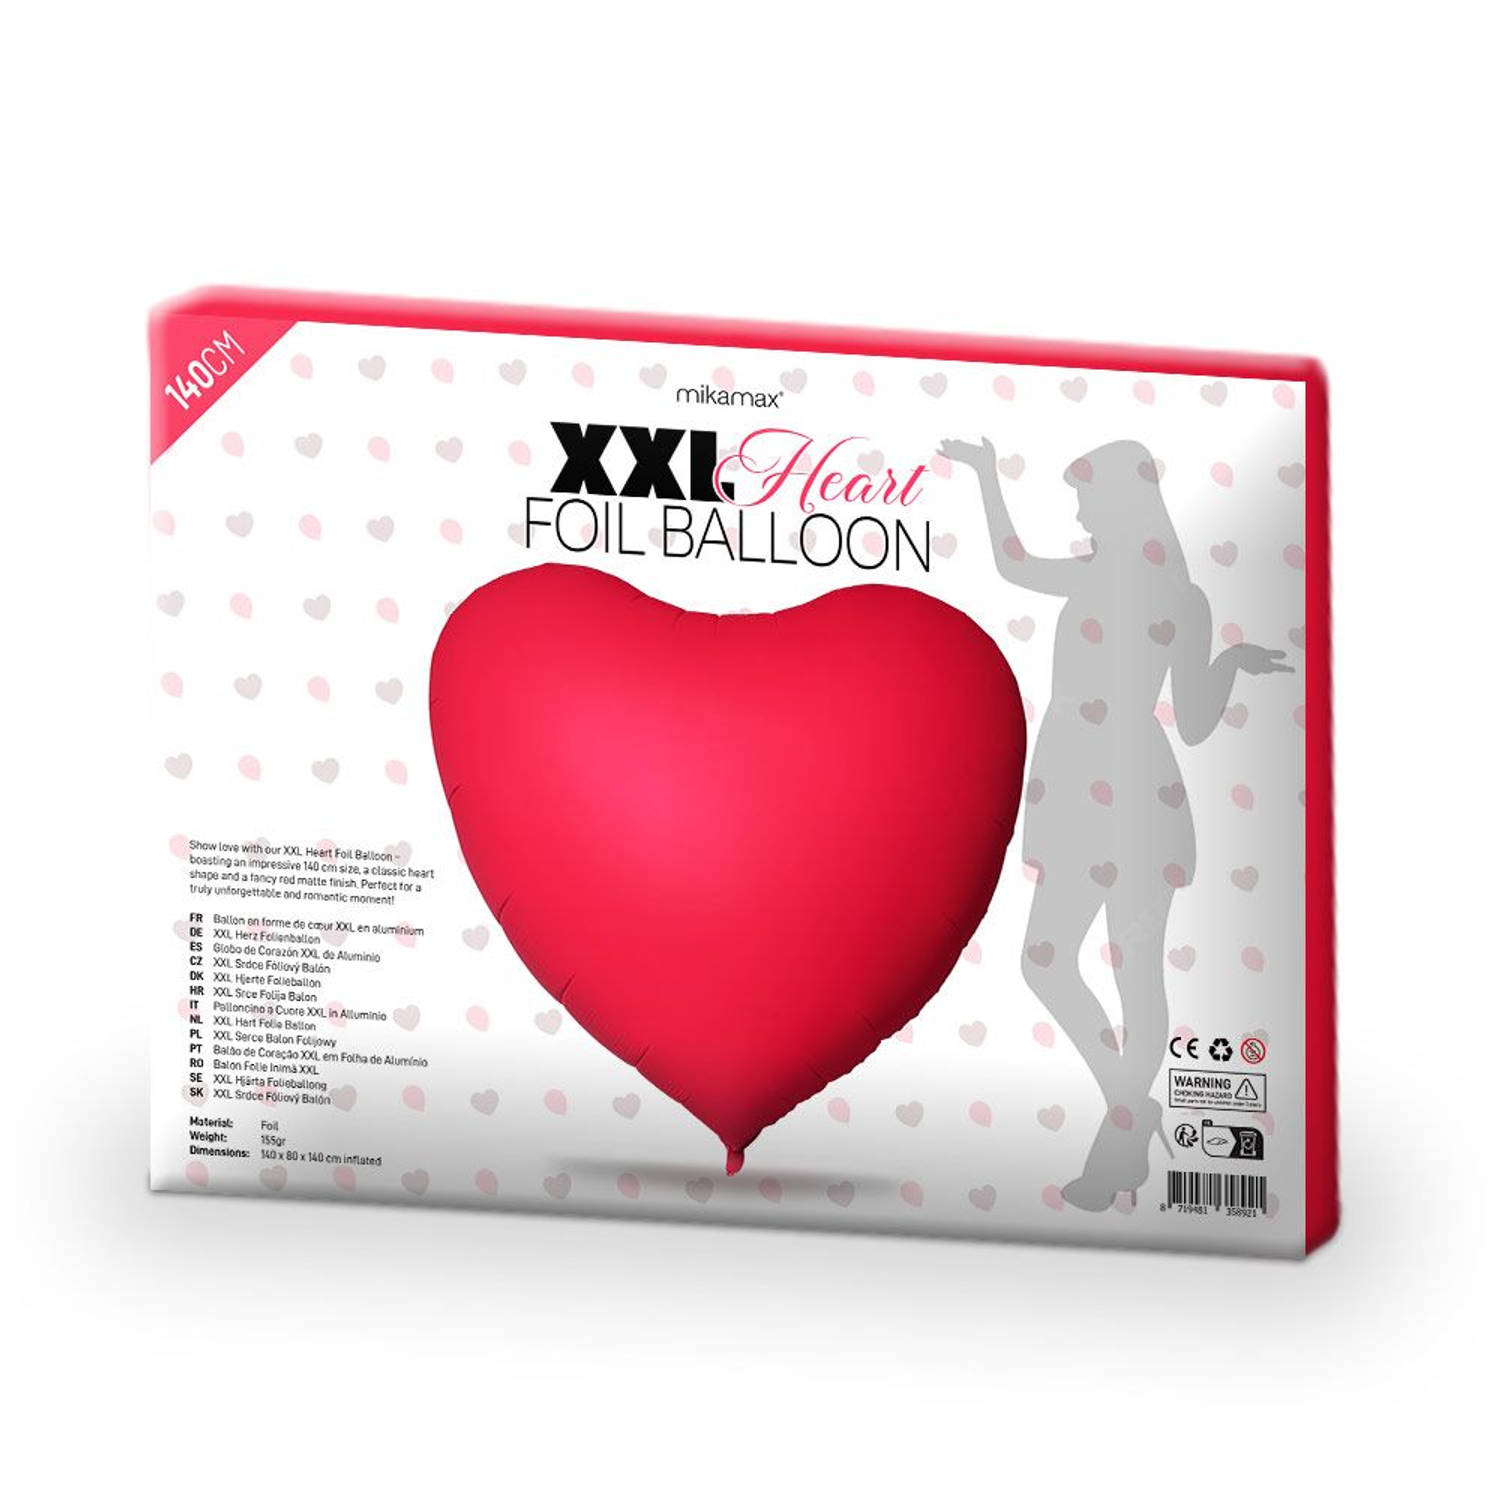 Hart Ballon - XXL - Folie - 40 x 80 x 140 cm - Rood - Valentijn versiering - Grote hart ballon - Original